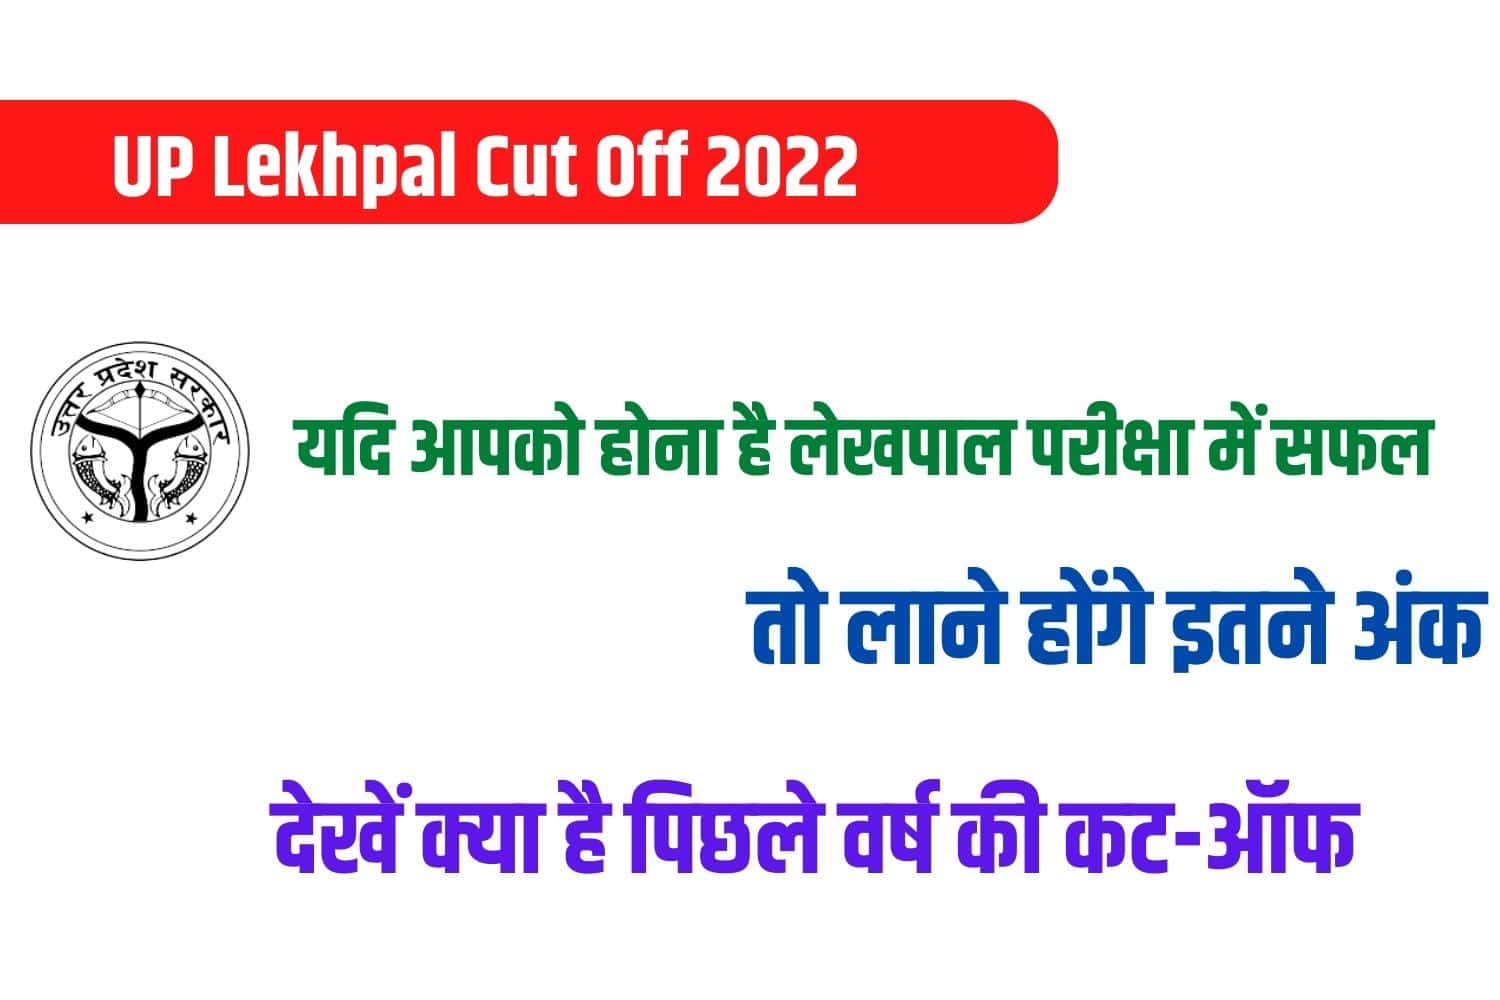 UP Lekhpal Cut Off 2022